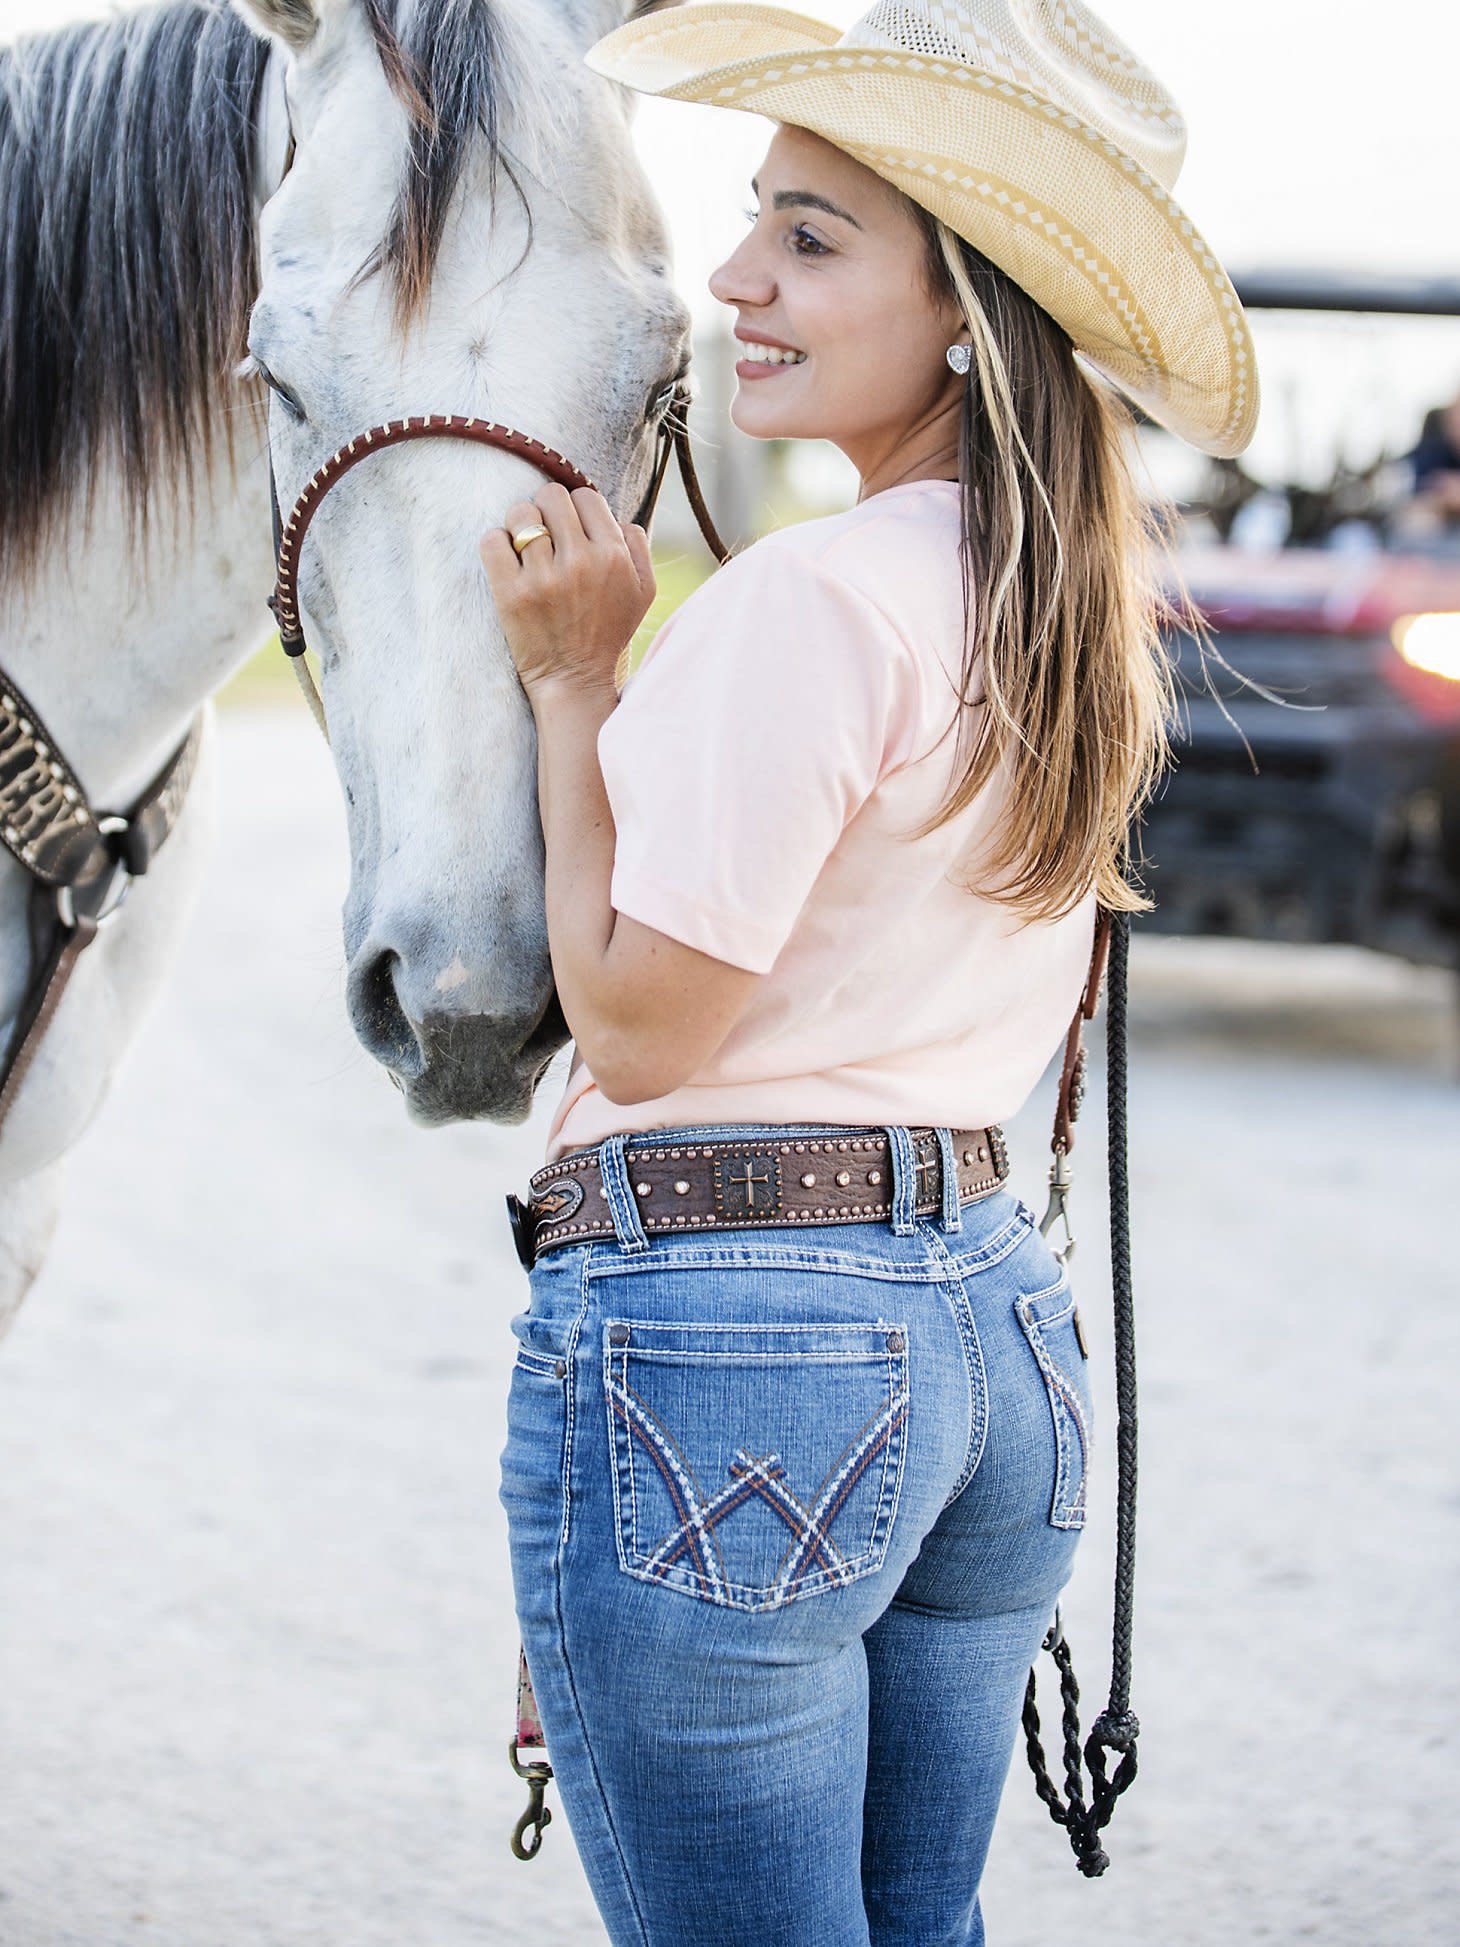 Women's Wrangler Retro Mae Jeans - Deadwood - Gass Horse Supply & Western  Wear